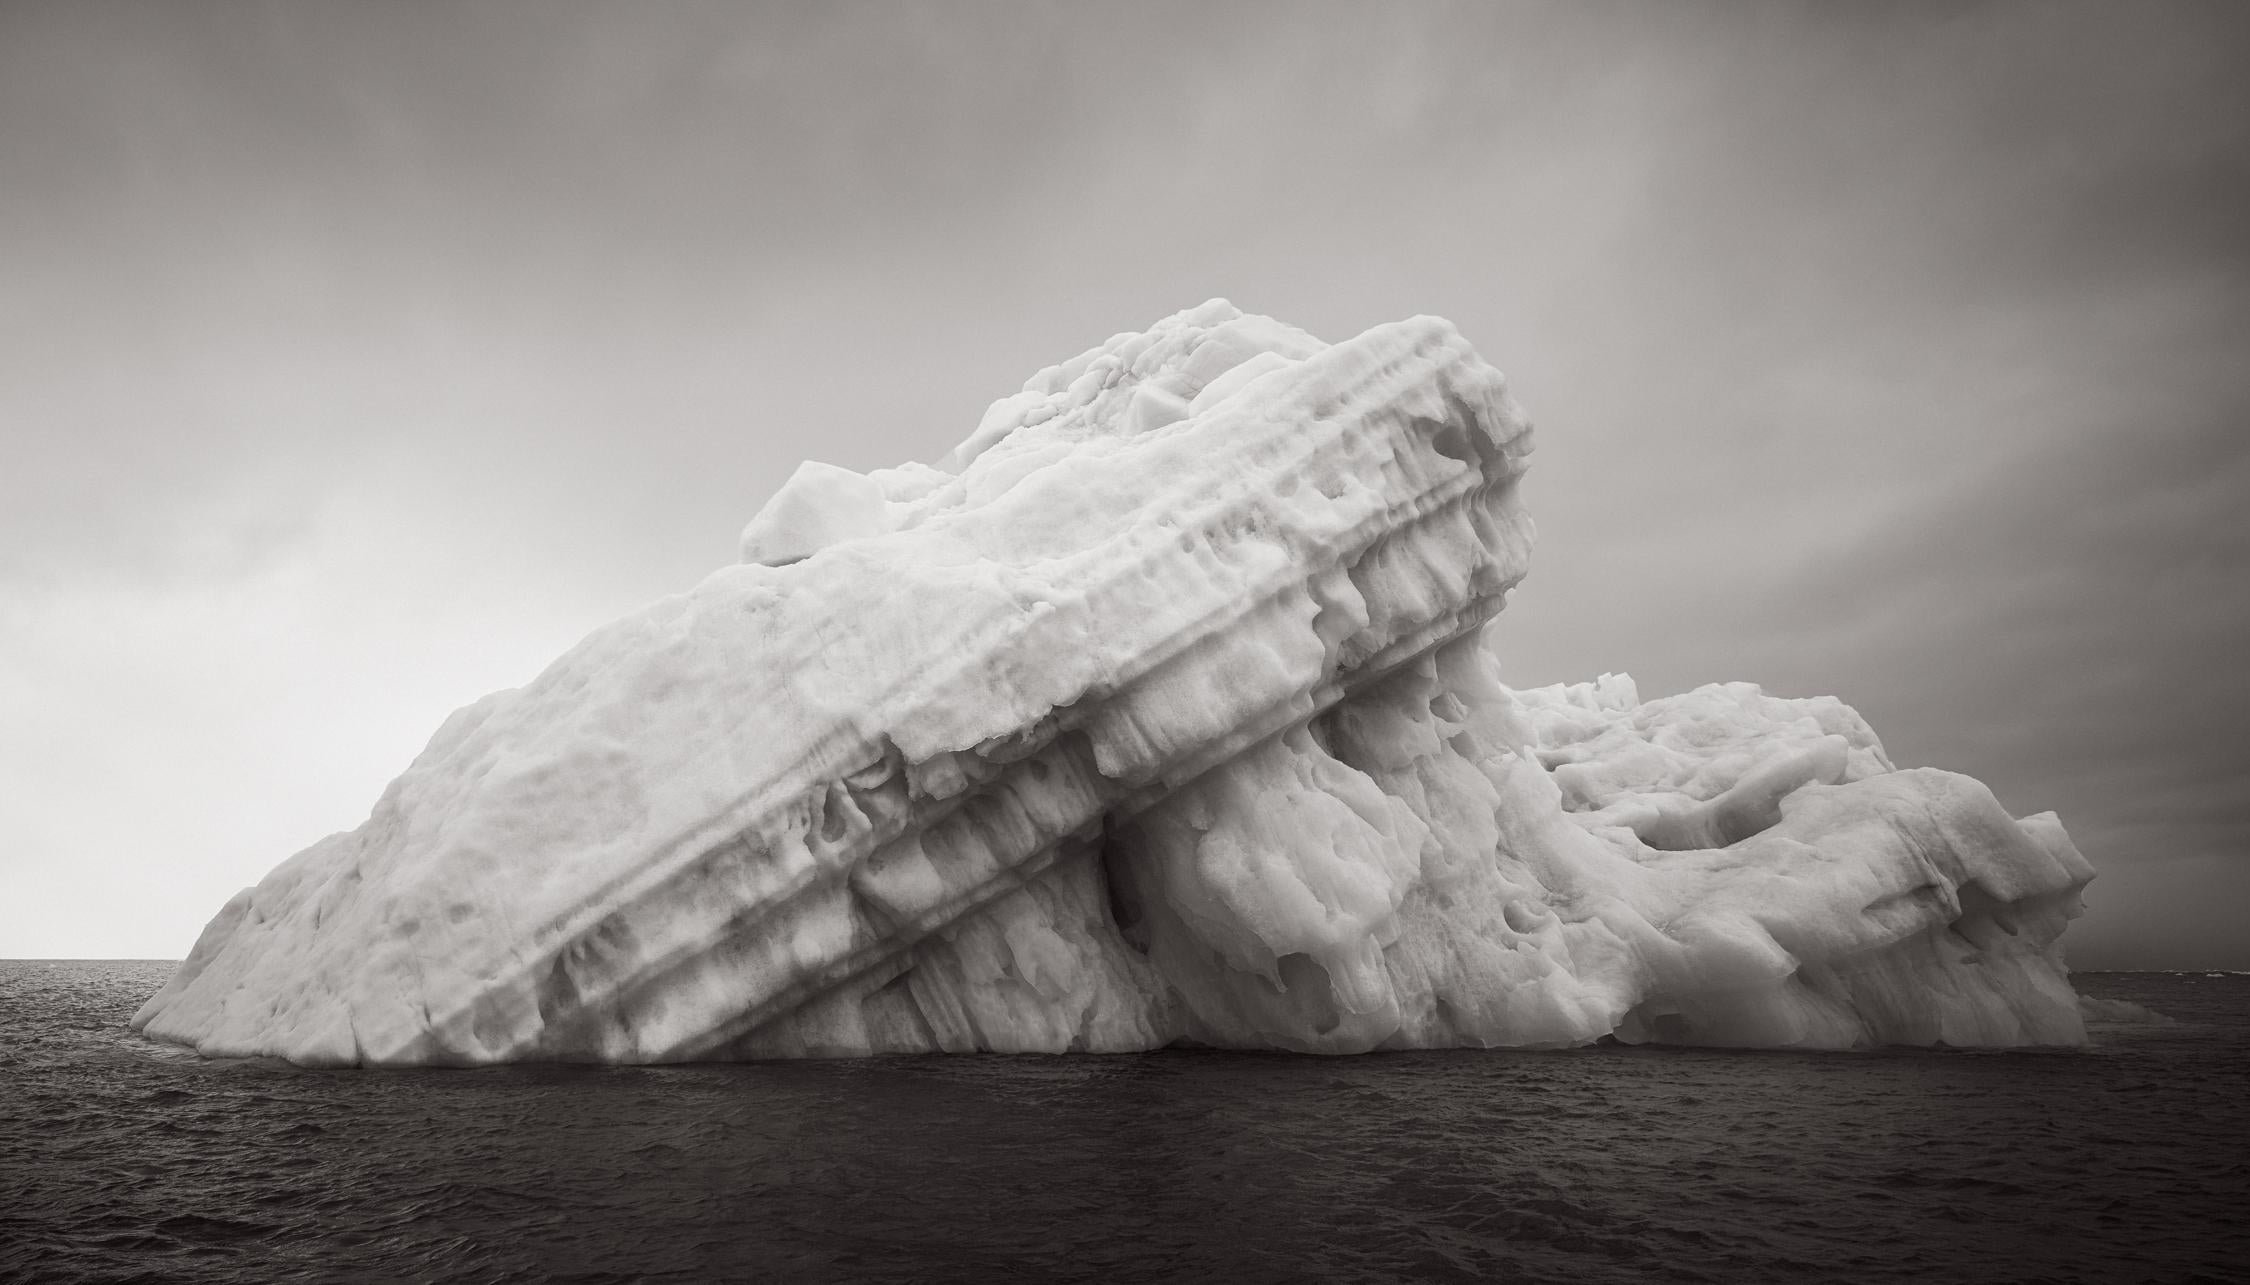 Drew Doggett Black and White Photograph – Geformte Eisform in arktischen Gewässern, Abstrakt, Nature